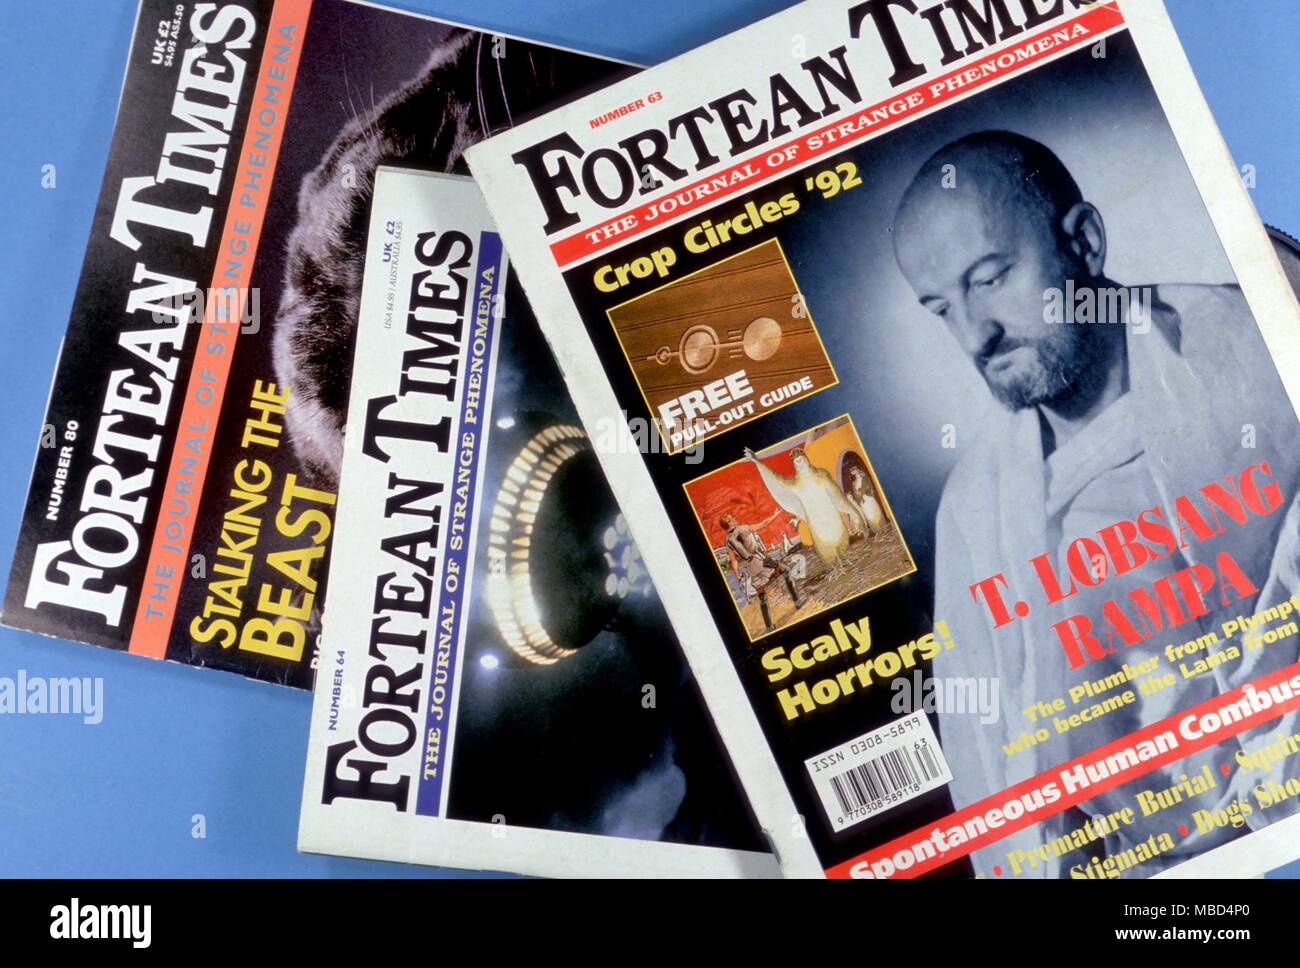 Verschiedene Fragen der Fortean Times, bei weitem die beste Zeitschrift, die sich mit seltsamen Phänomenen, wie gesehen und von Charles Fort klassifiziert. - ©/Charles Walker Stockfoto